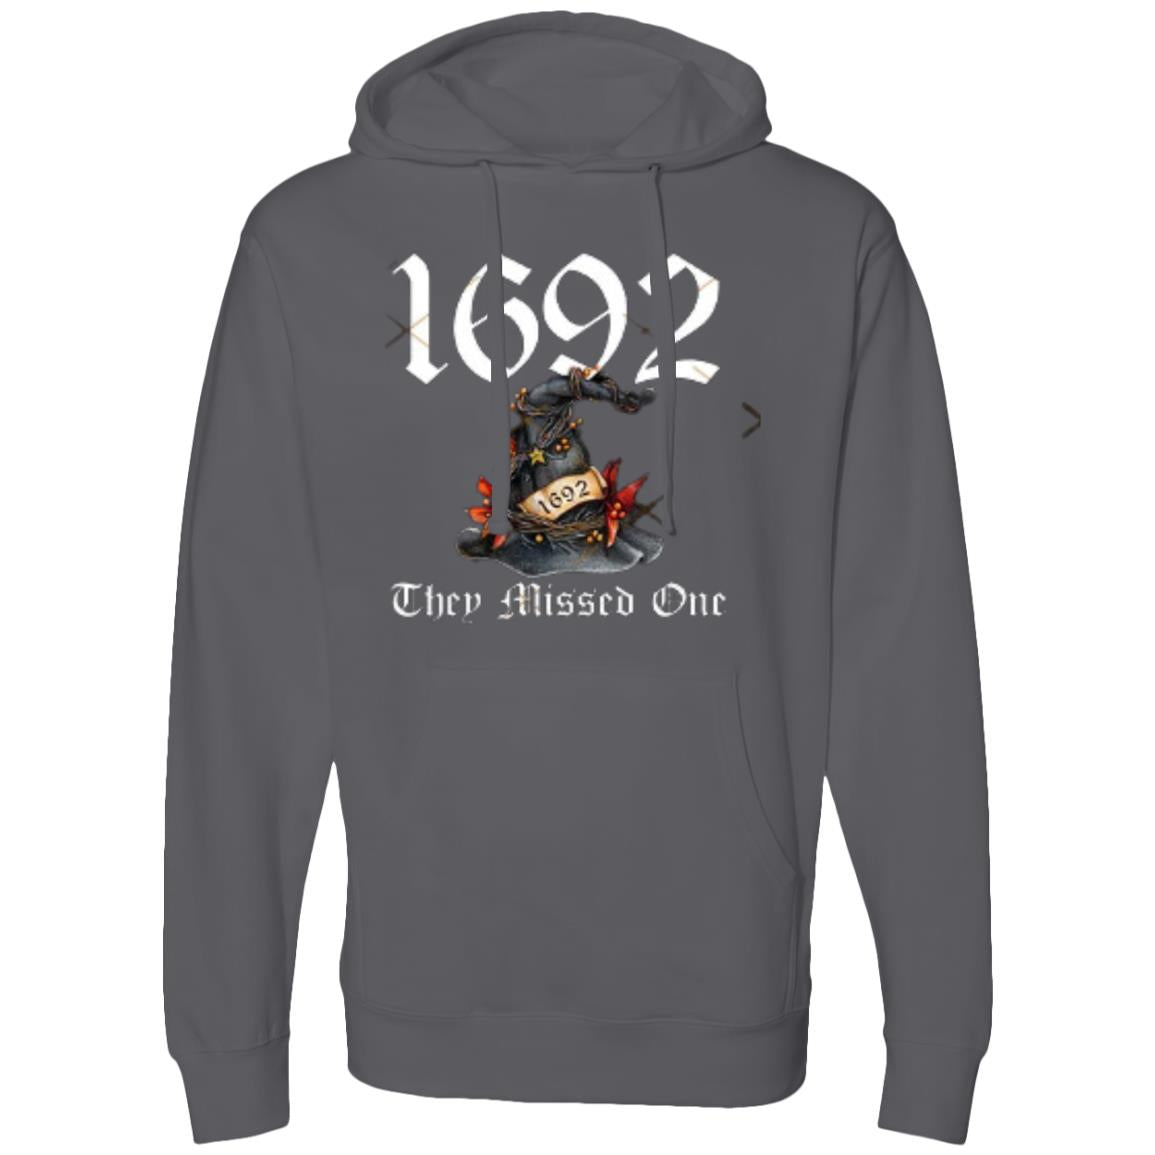 1692 hoodie(5) SS4500 Midweight Hooded Sweatshirt